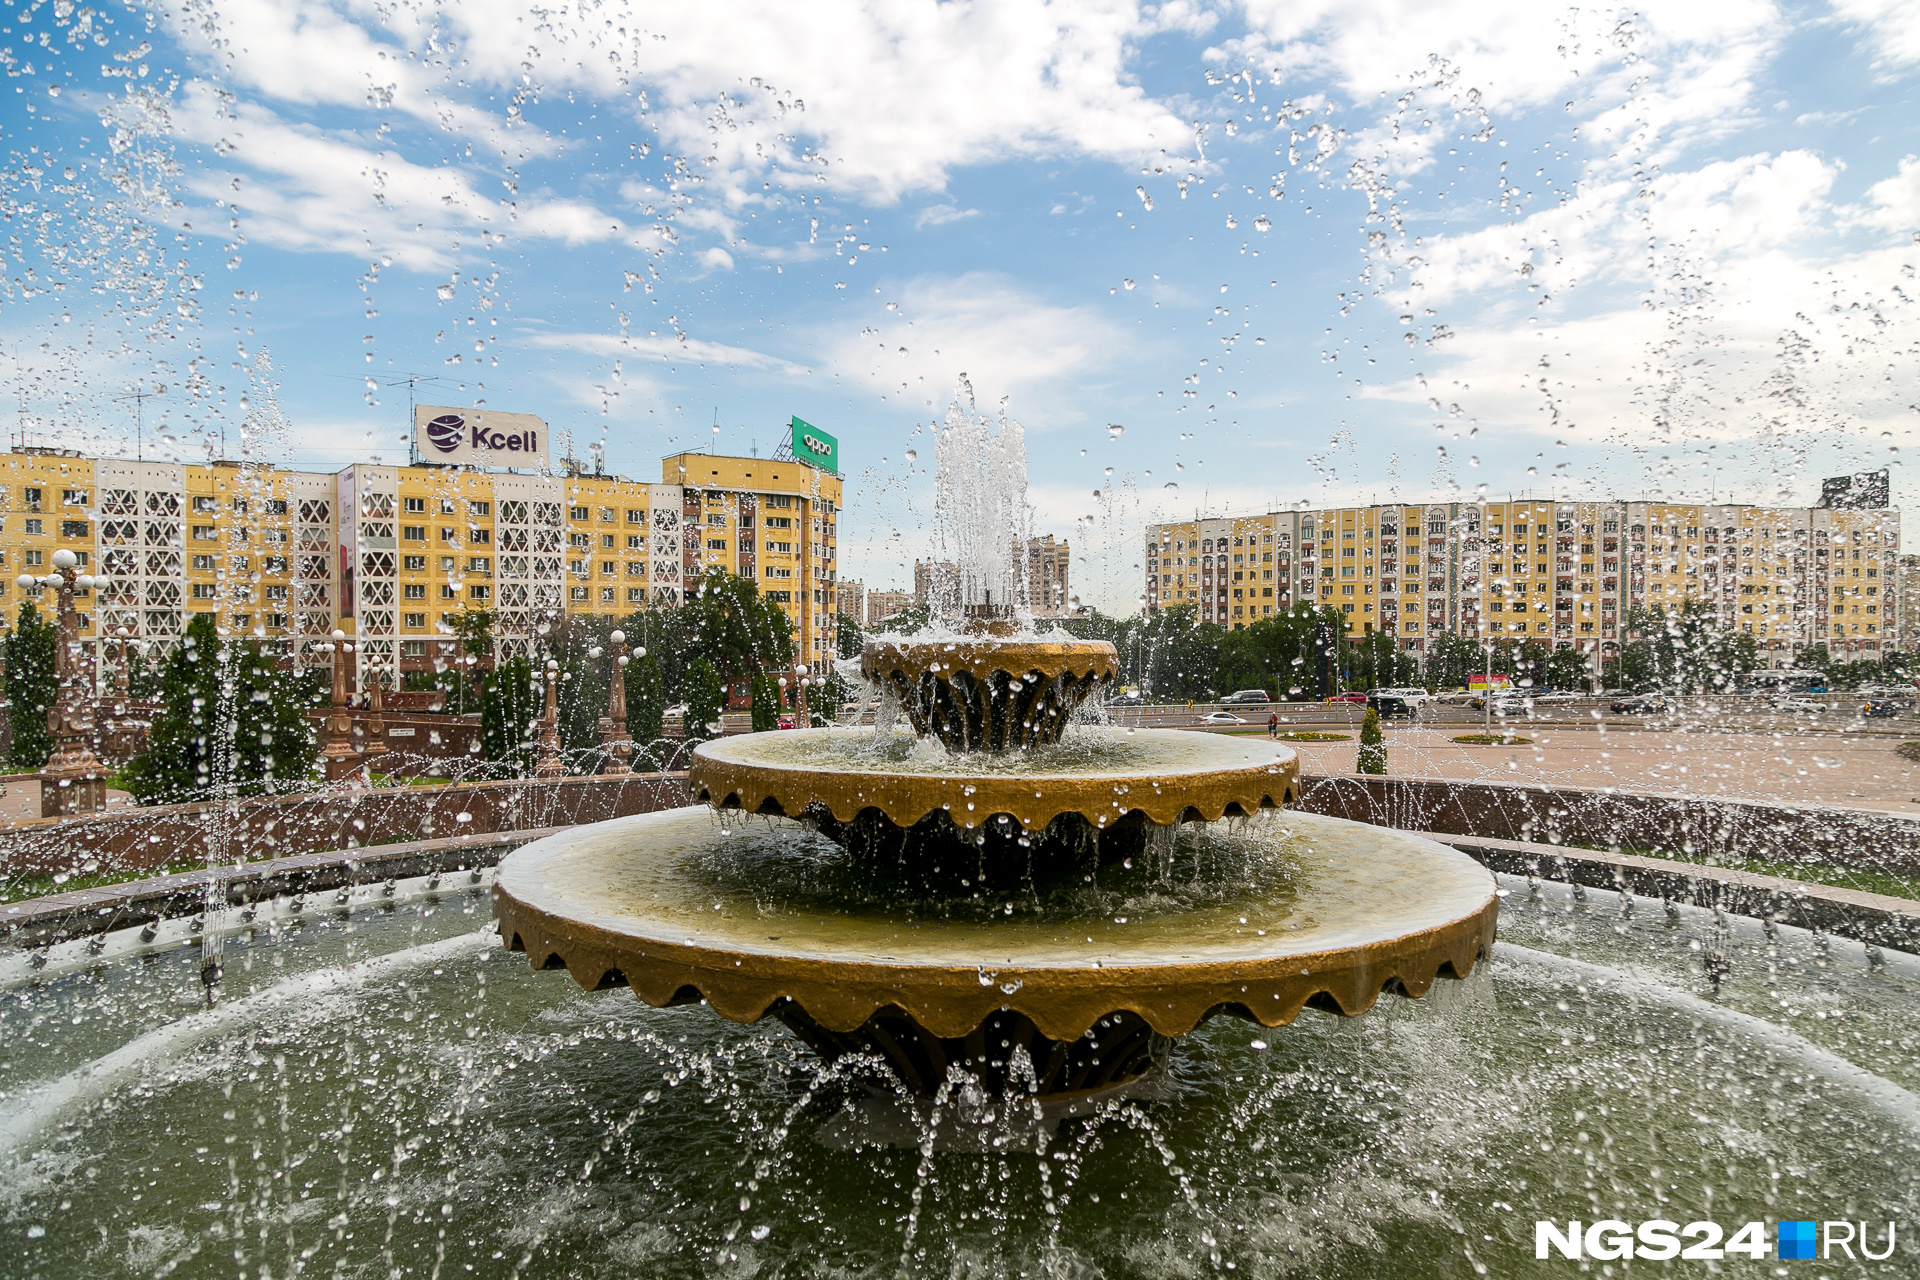 Вернемся в город. По последним данным, в нем столько же фонтанов, сколько и в Красноярске — 120, половина из них в муниципальной собственности. Каждый год в конце весны в городе отмечается праздник —
«День фонтанов».